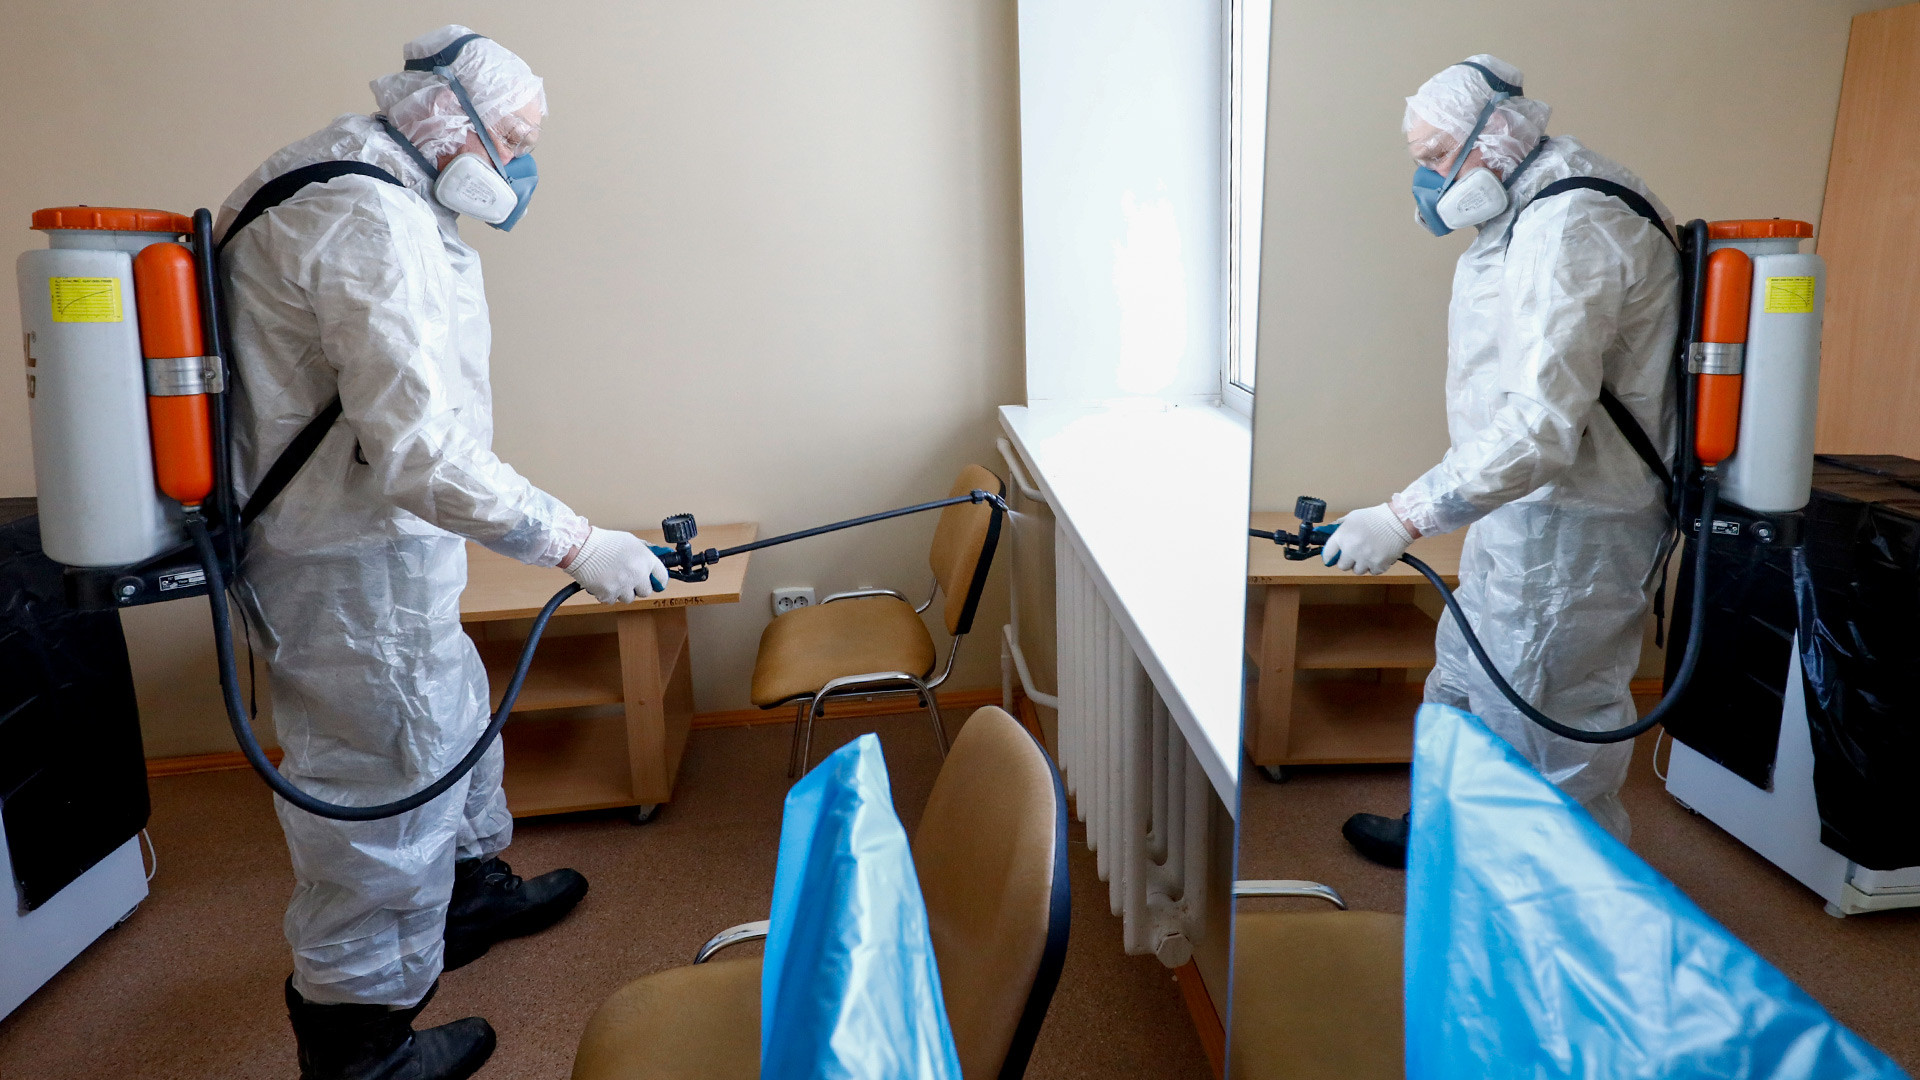 Дезинфекција санаторијума „Градостроитељ“ после карантина због корона вируса COVID-2019 у Тјумењској области.